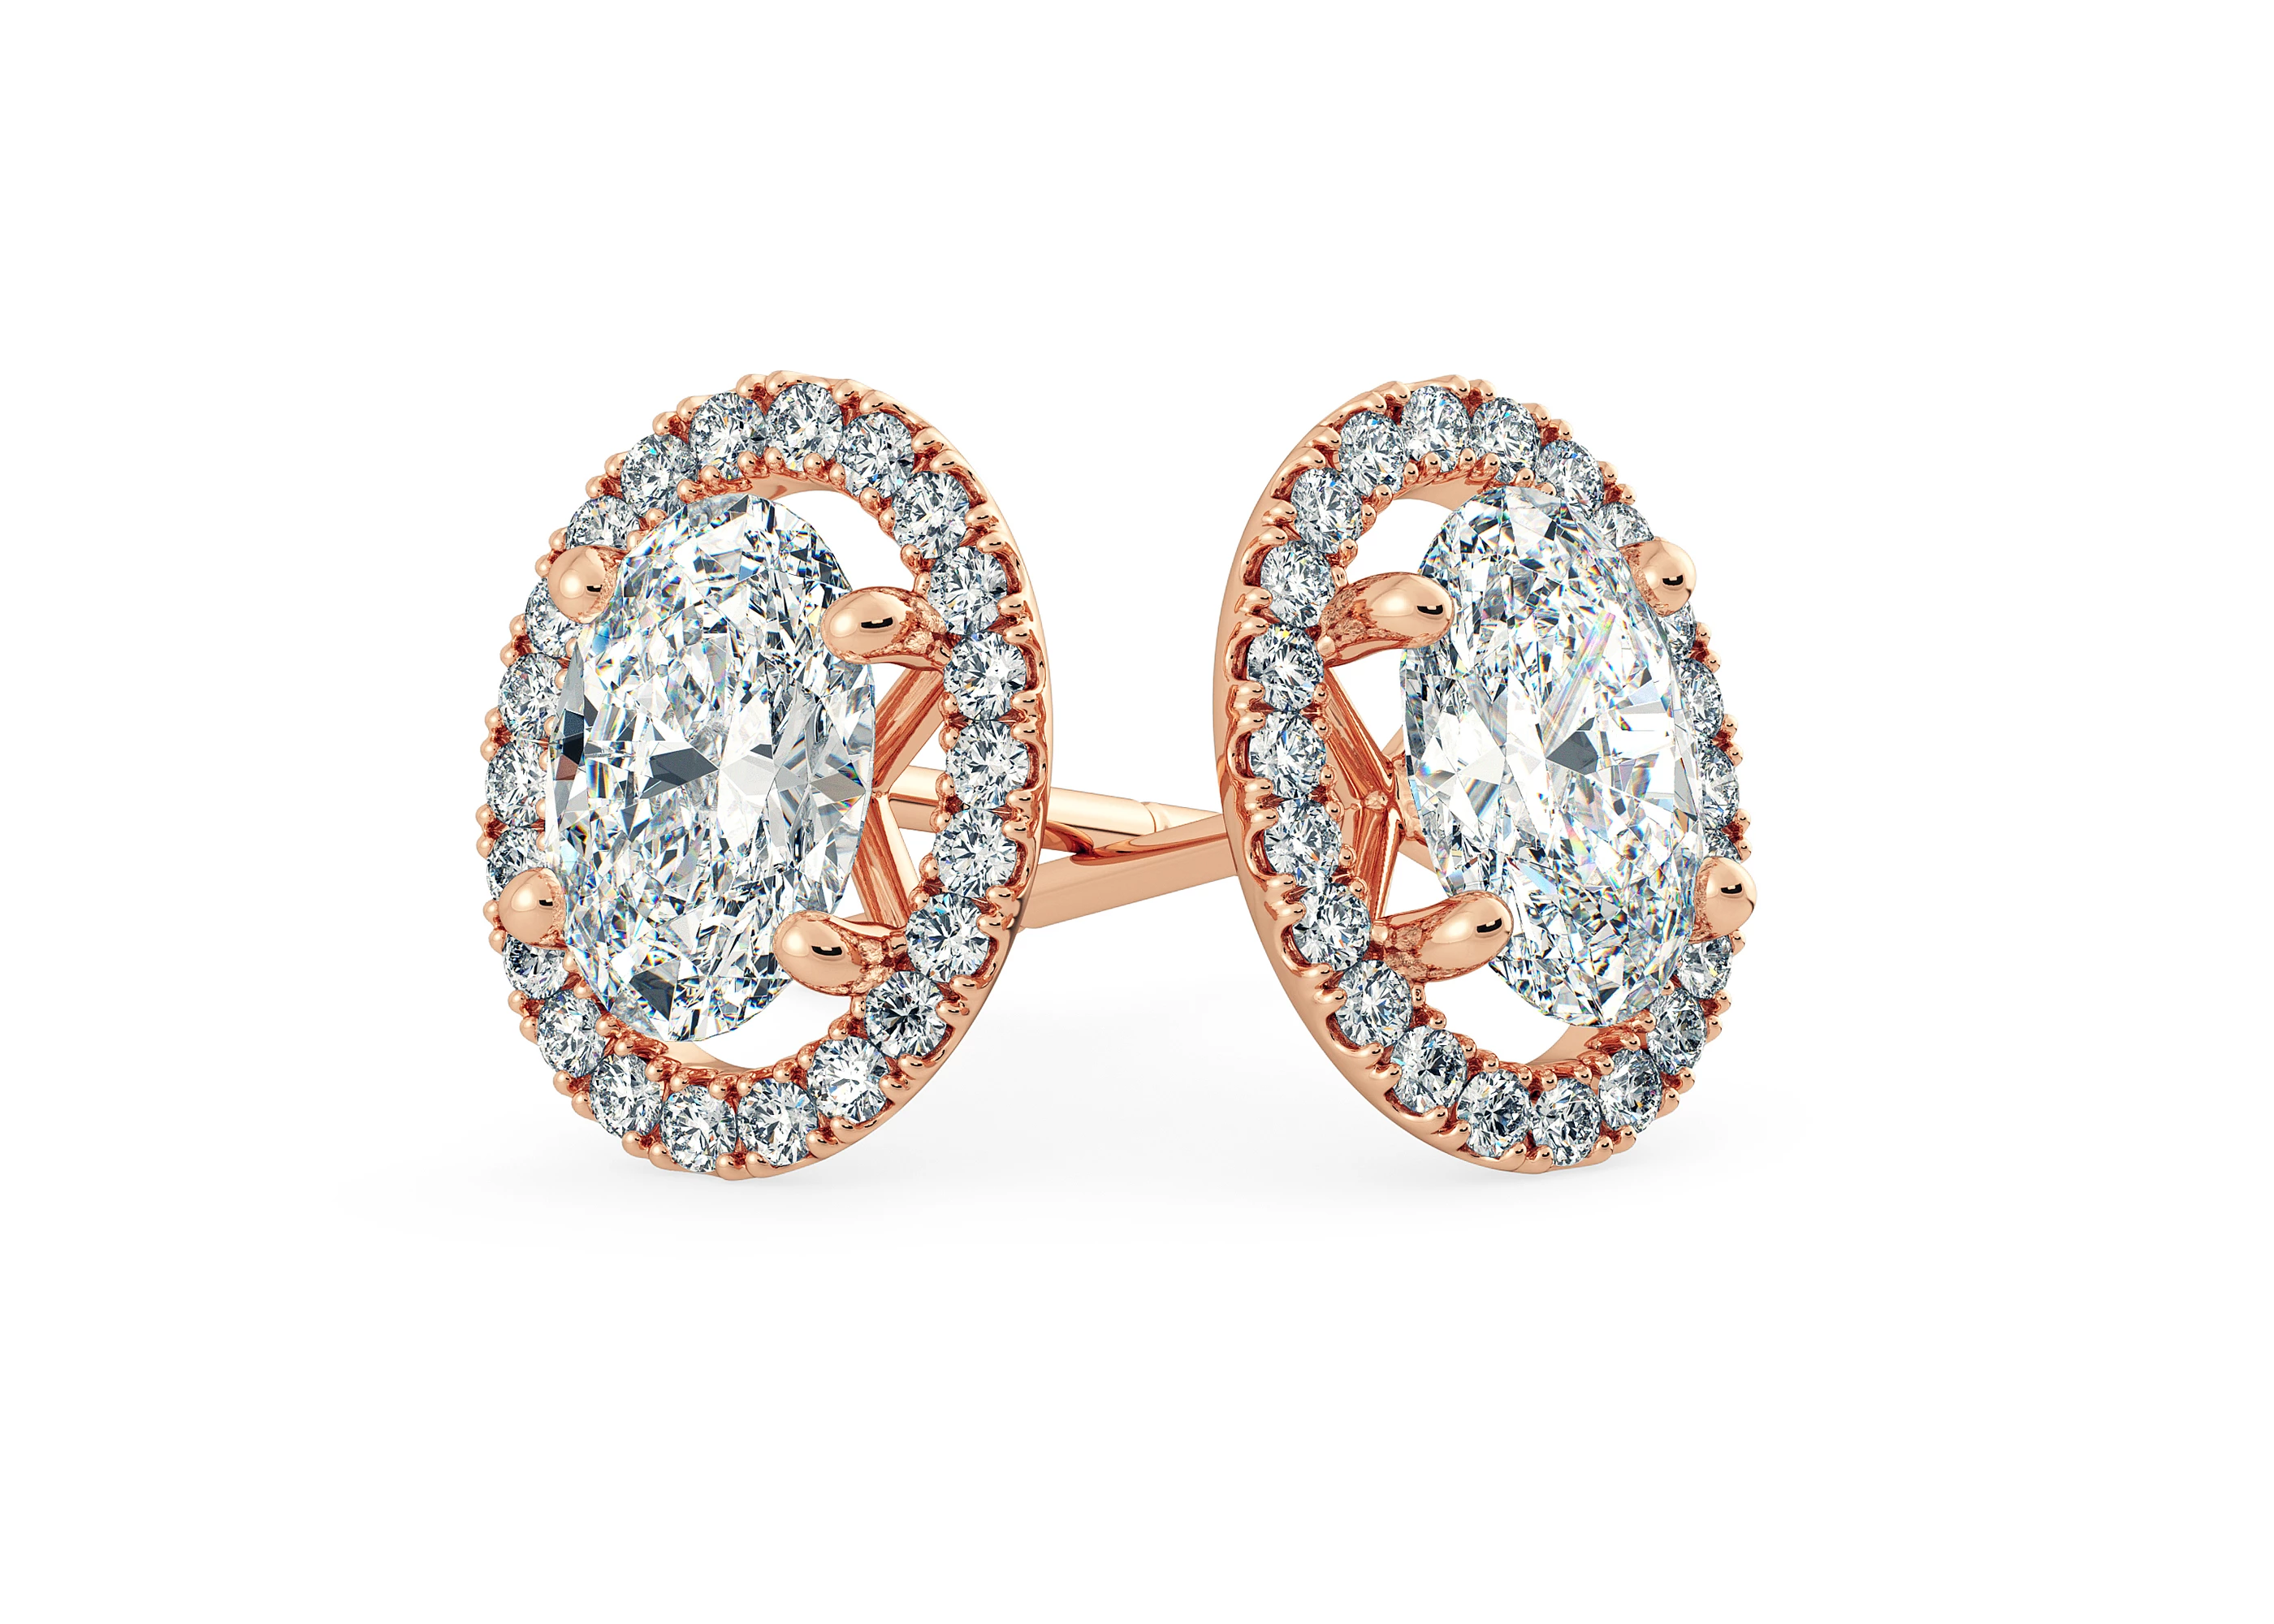 Bijou Oval Diamond Stud Earrings in 18K Rose Gold with Butterfly Backs